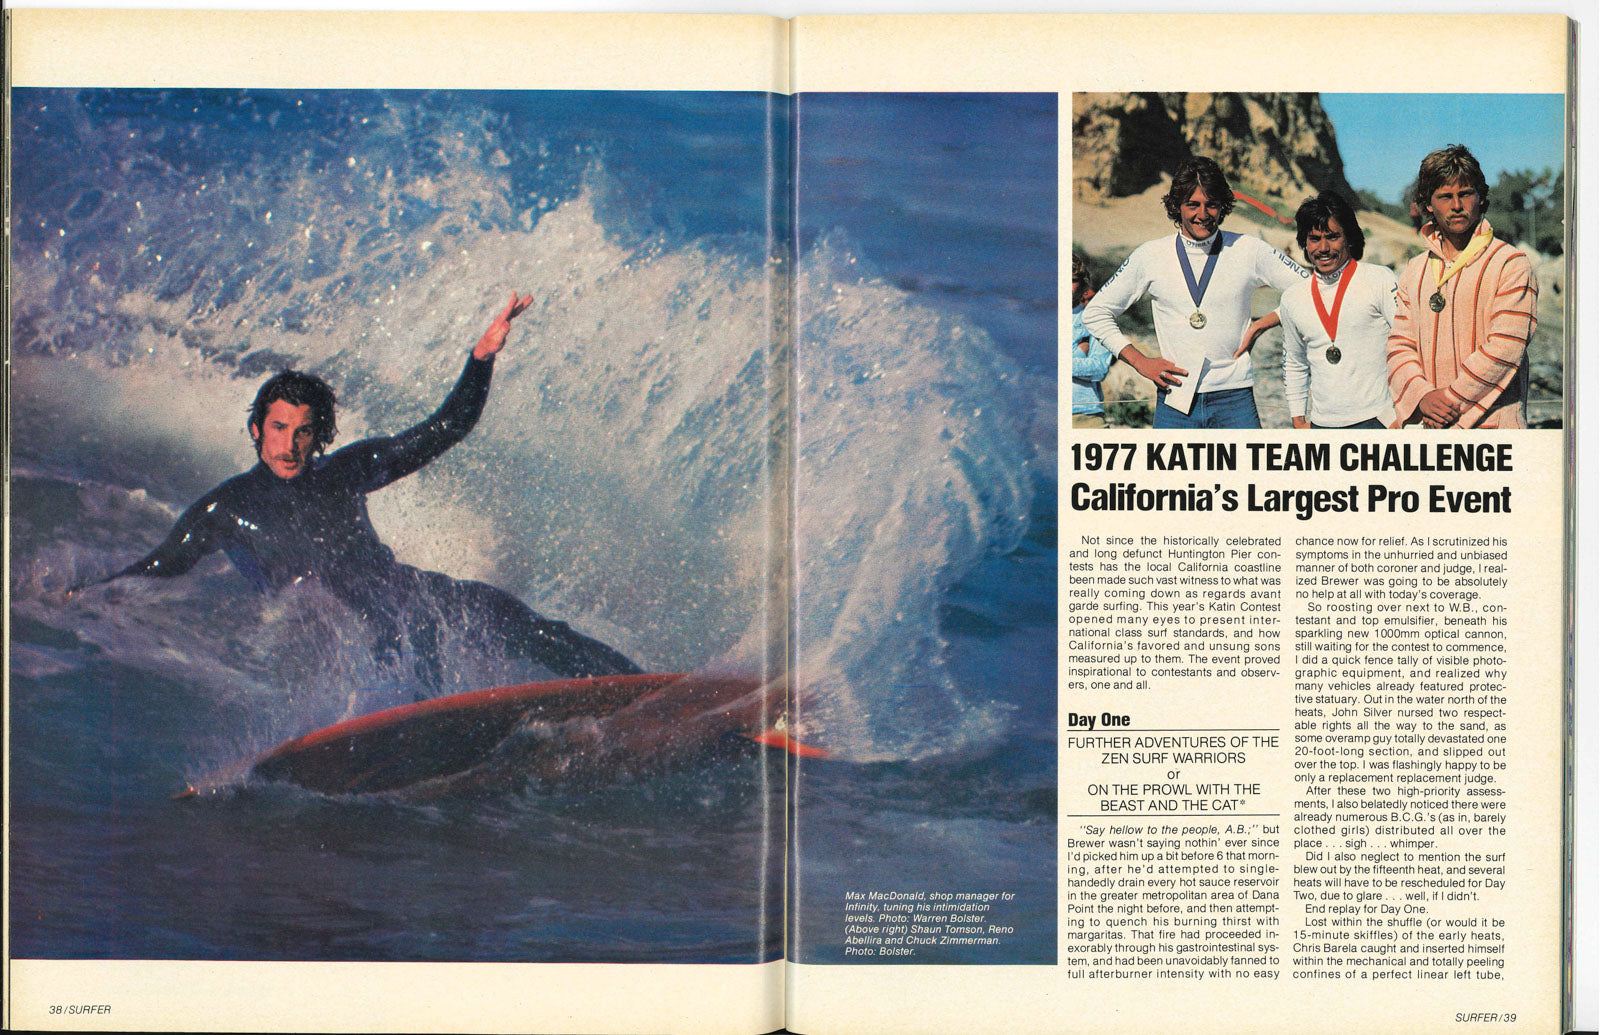 1977 Katin Team Challenge diffusé dans Surfer Magazine, 1977.